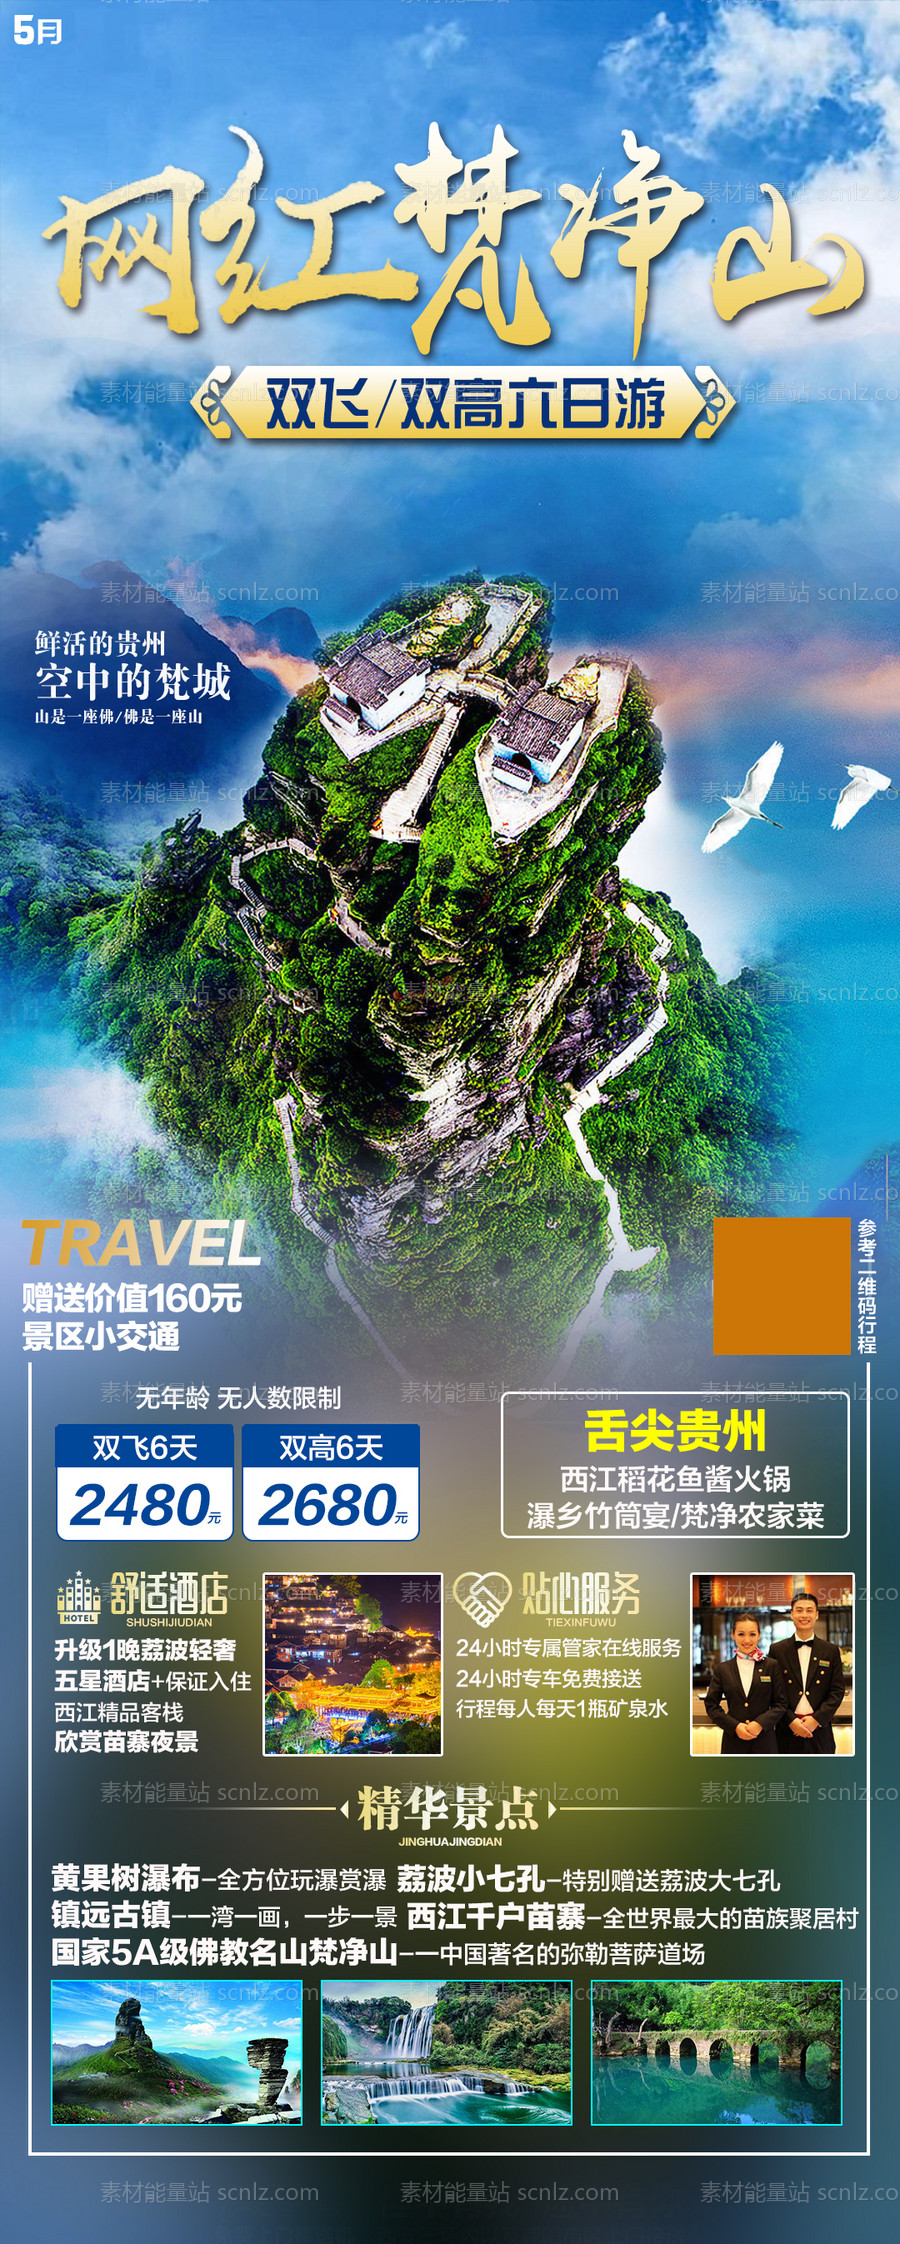 素材能量站-贵州旅游海报